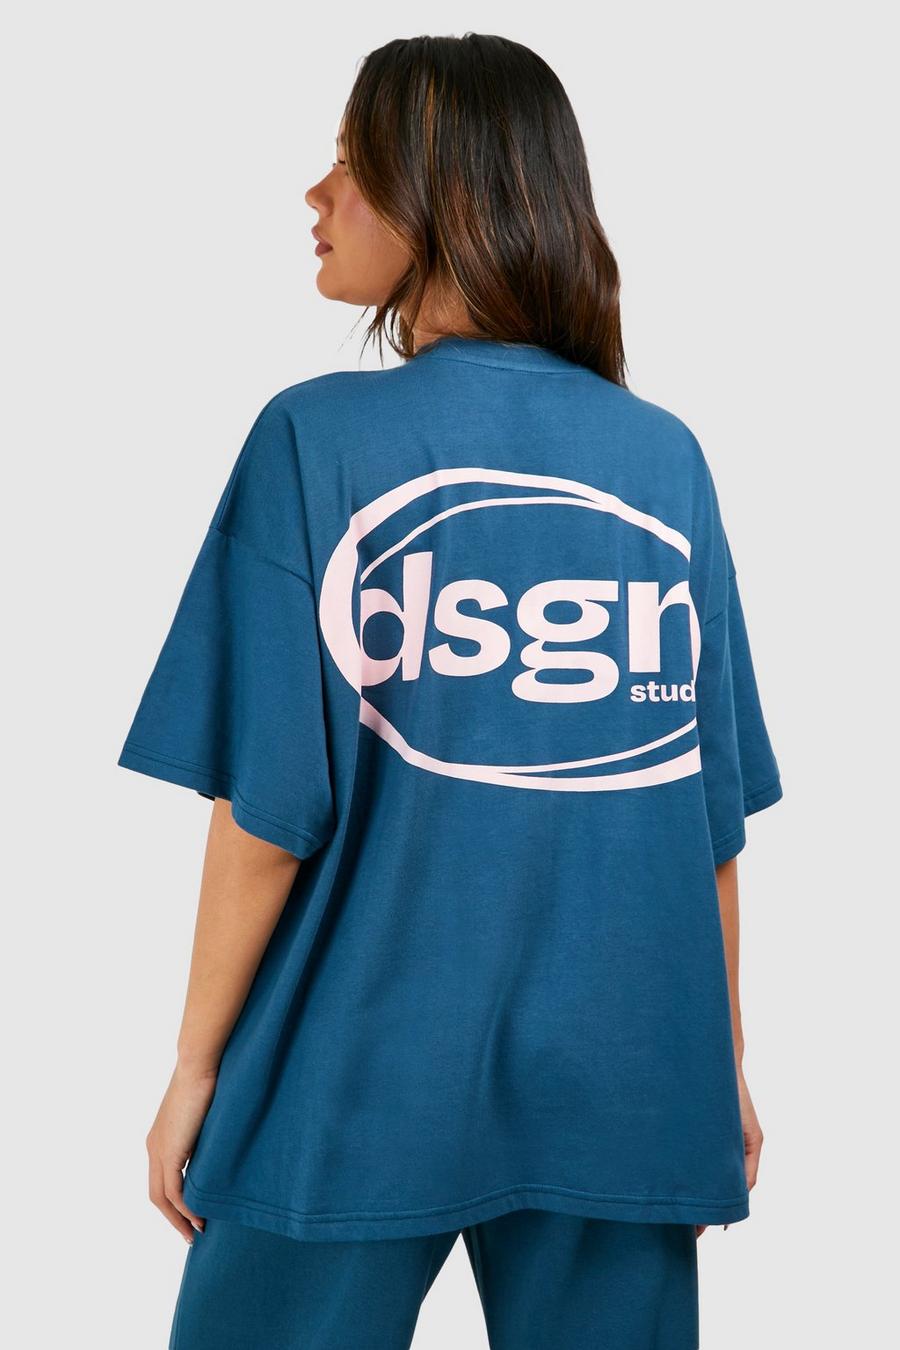 T-shirt oversize à slogan Dsgn Studio, Teal image number 1